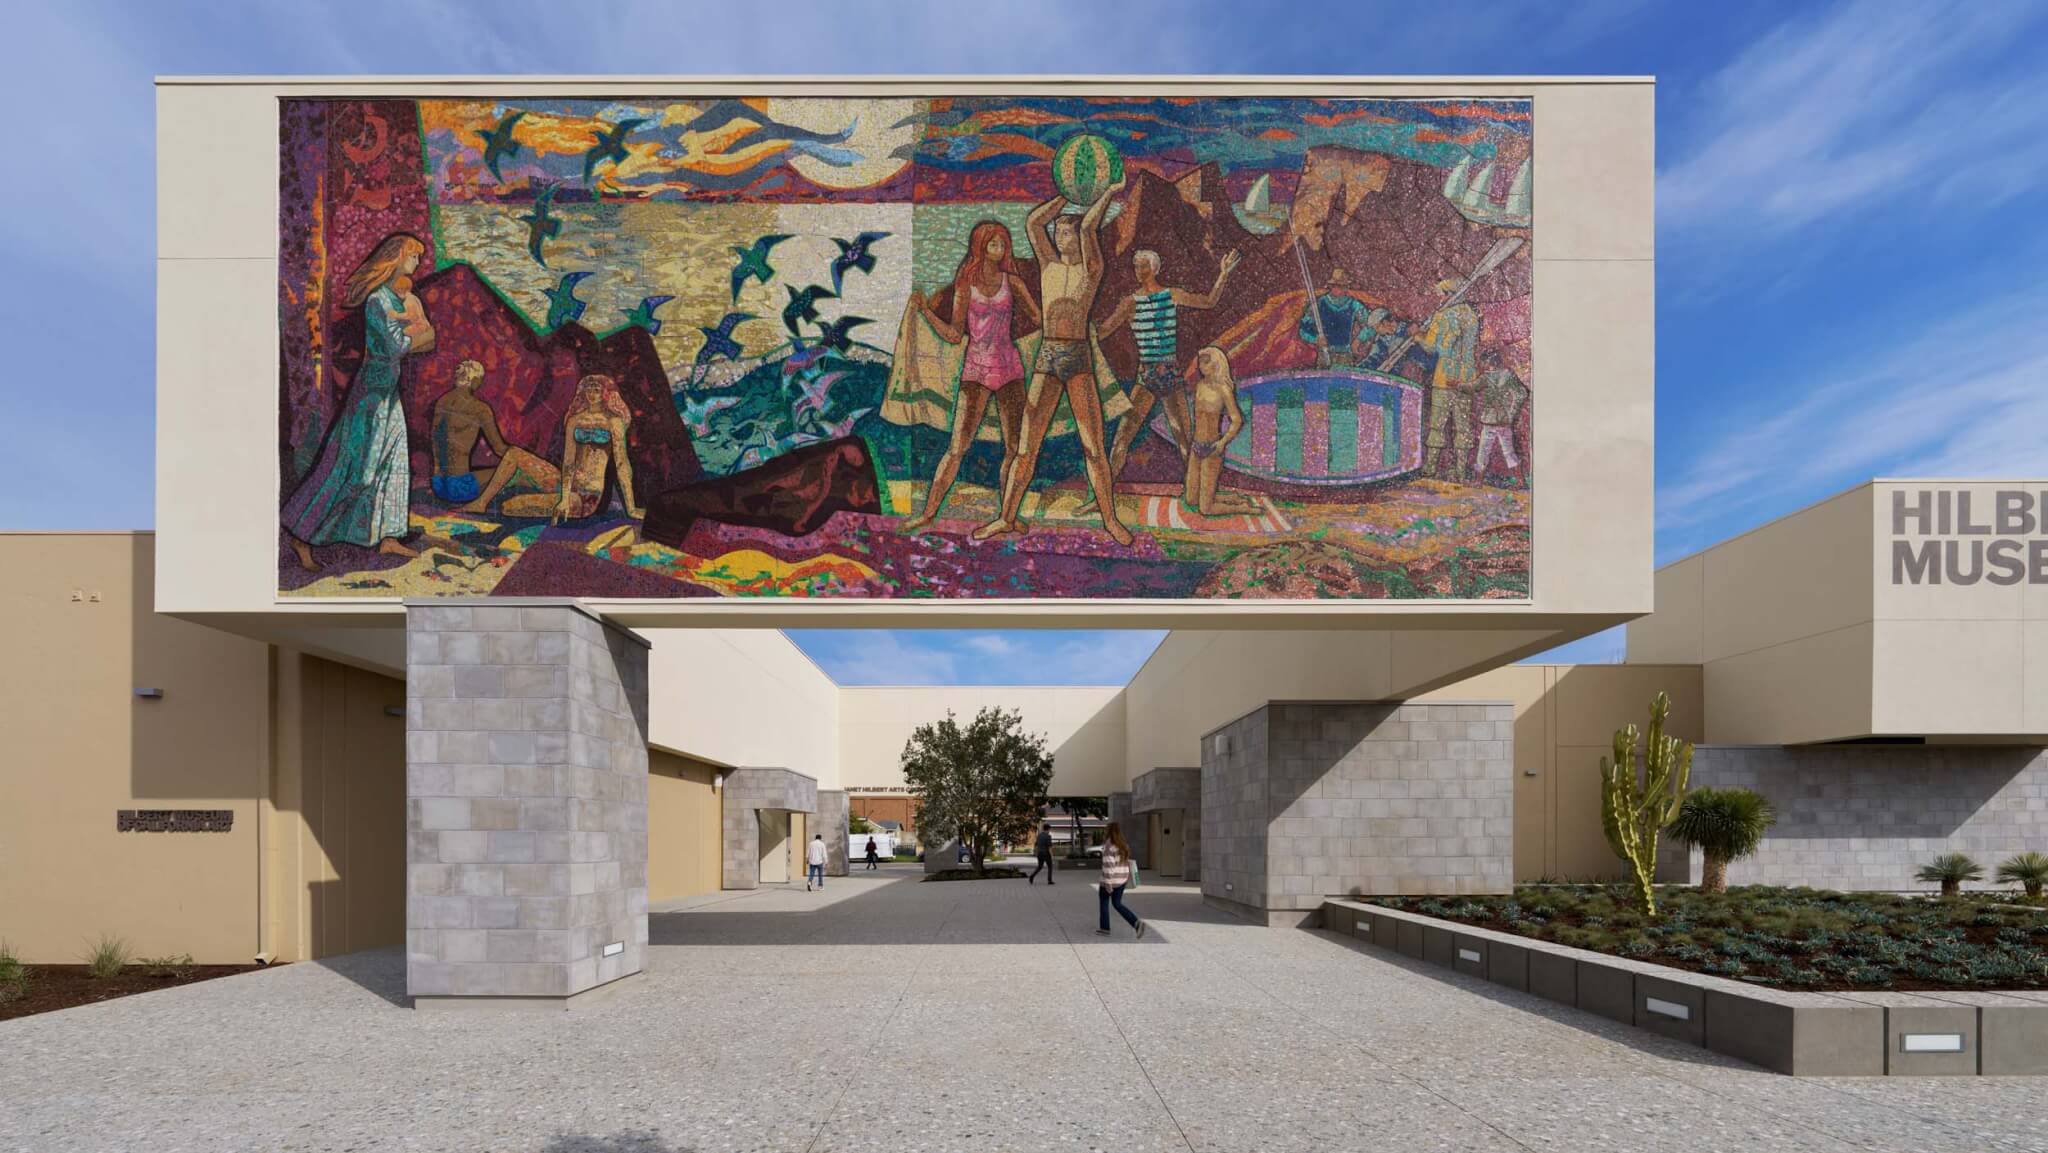 نقاشی دیواری در موزه هنر هیلبرت کالیفرنیا